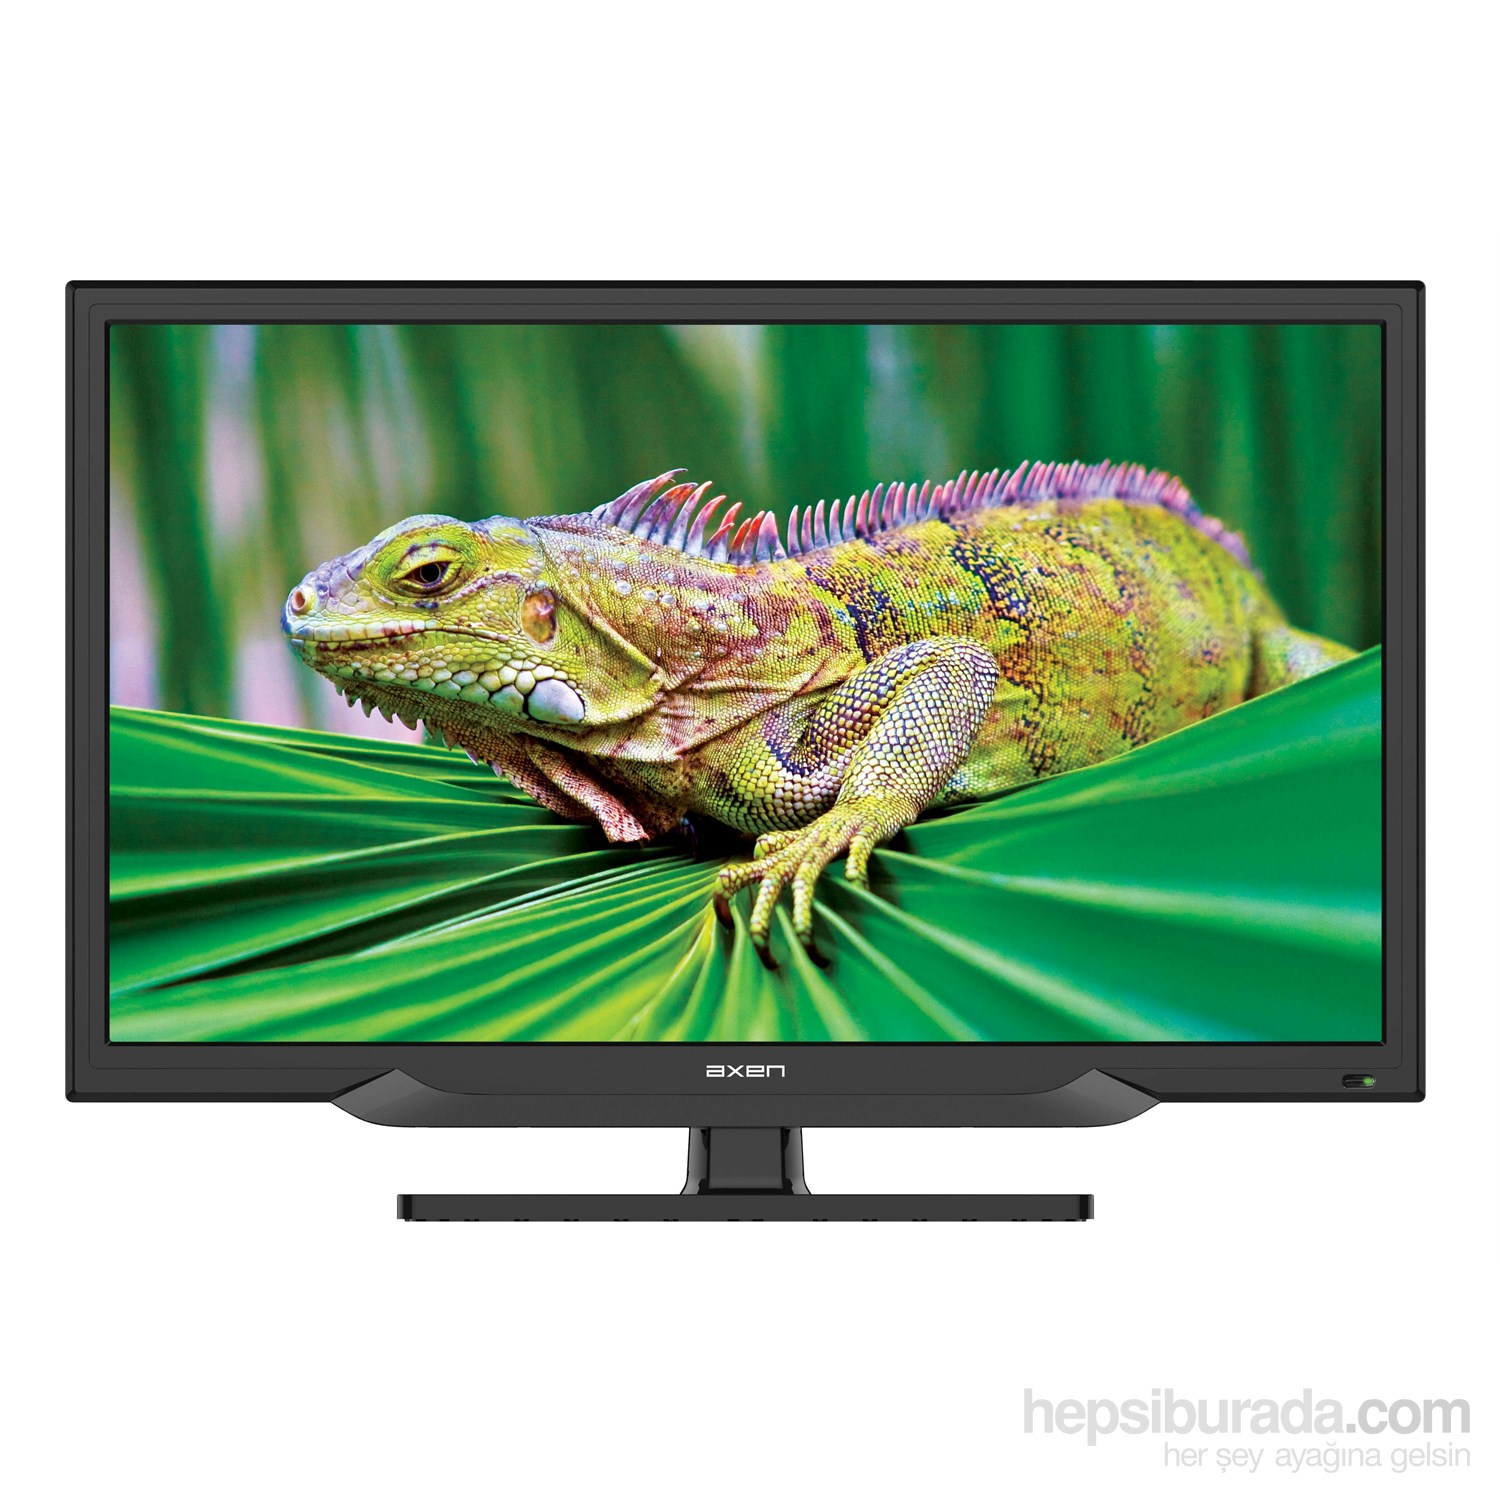 Axen 23" 58 Ekran Full HD Uydu Alıcılı Usb Movie LED TV (Sunny Elektronik A.Ş. Garantisindedir)